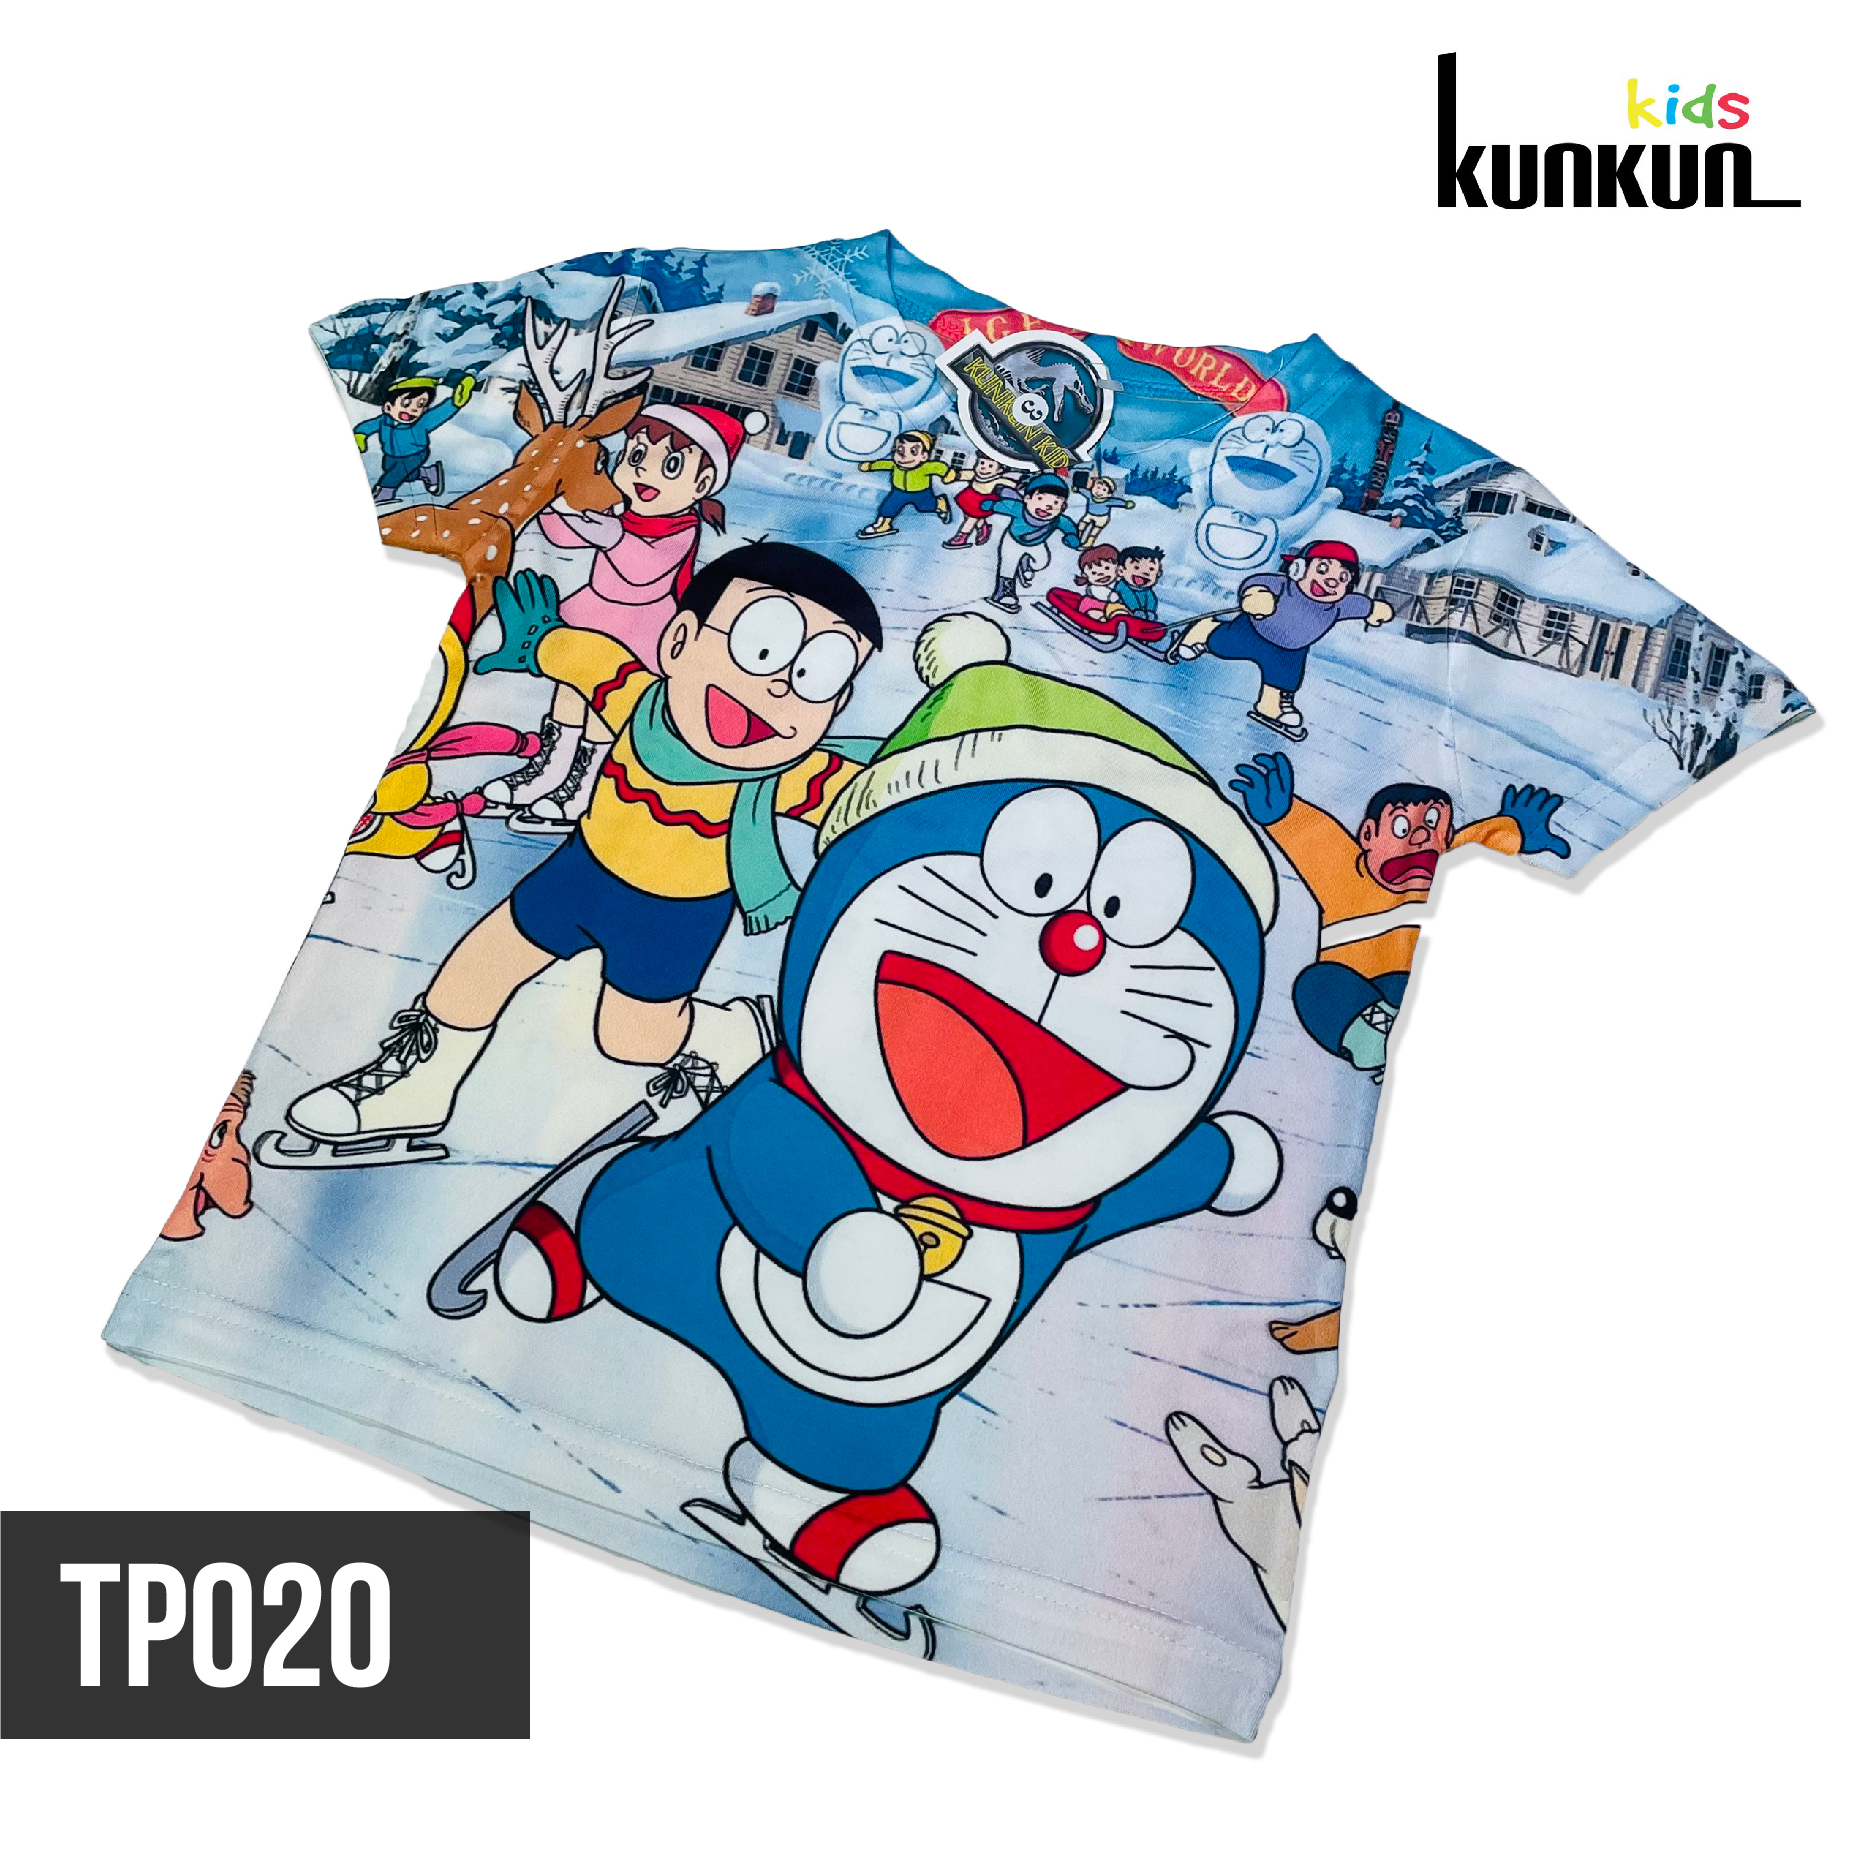 Đồ Bộ Bé Trai Hình Doraemon In 3D 10 (Size